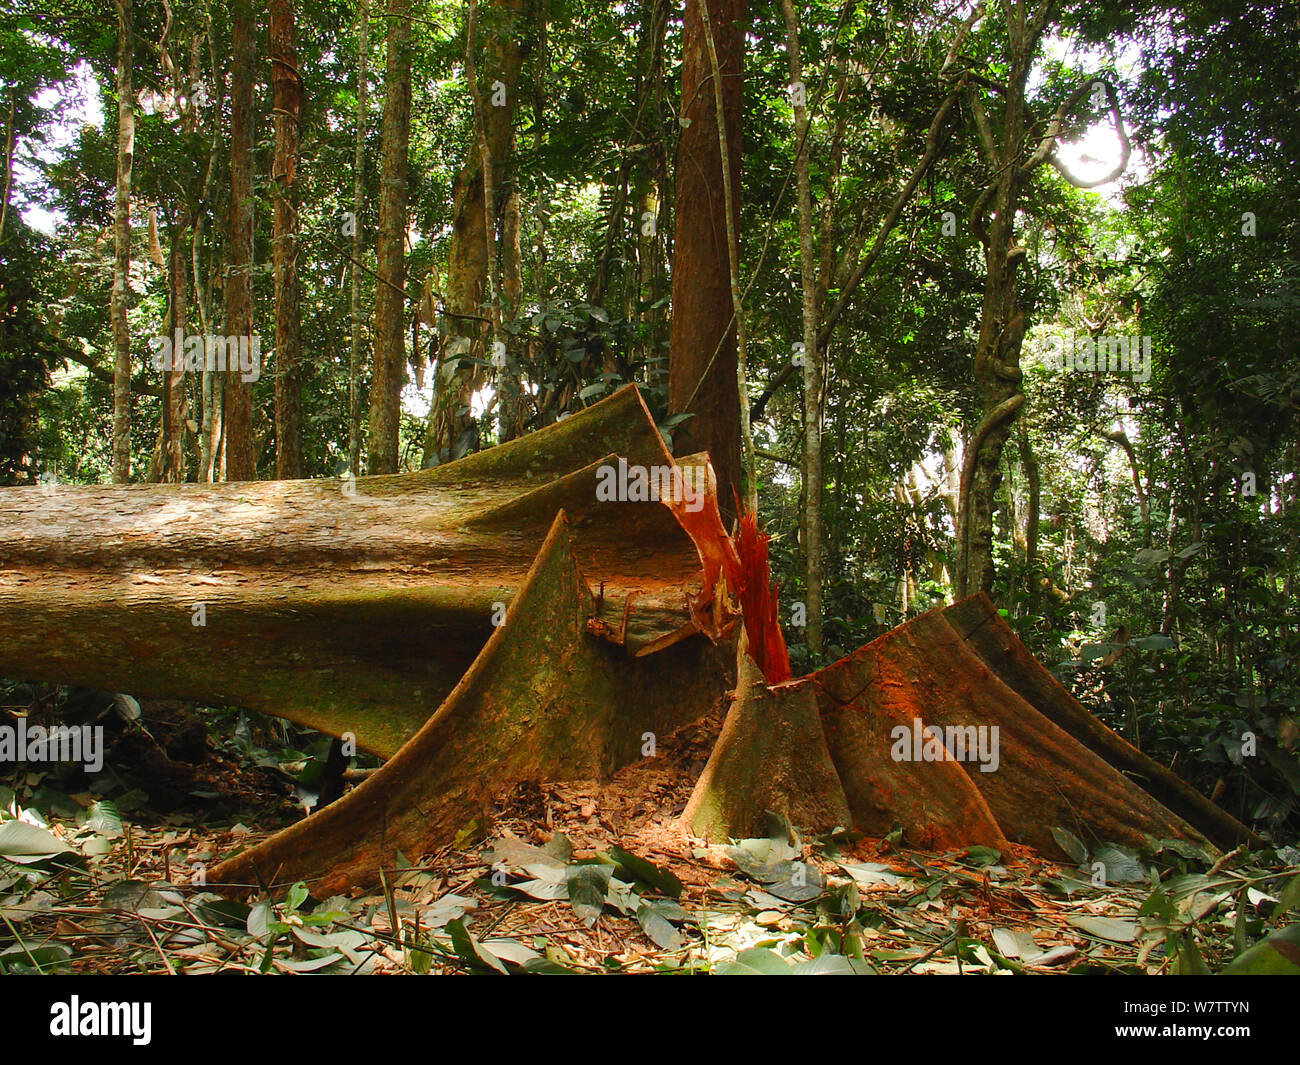 Selva africana de minas - talan árboles de maderas duras de explotación maderera. Al sur del Parque Nacional, Mbomo Odzala-Kokoua, República del Congo, mayo de 2005. Foto de stock